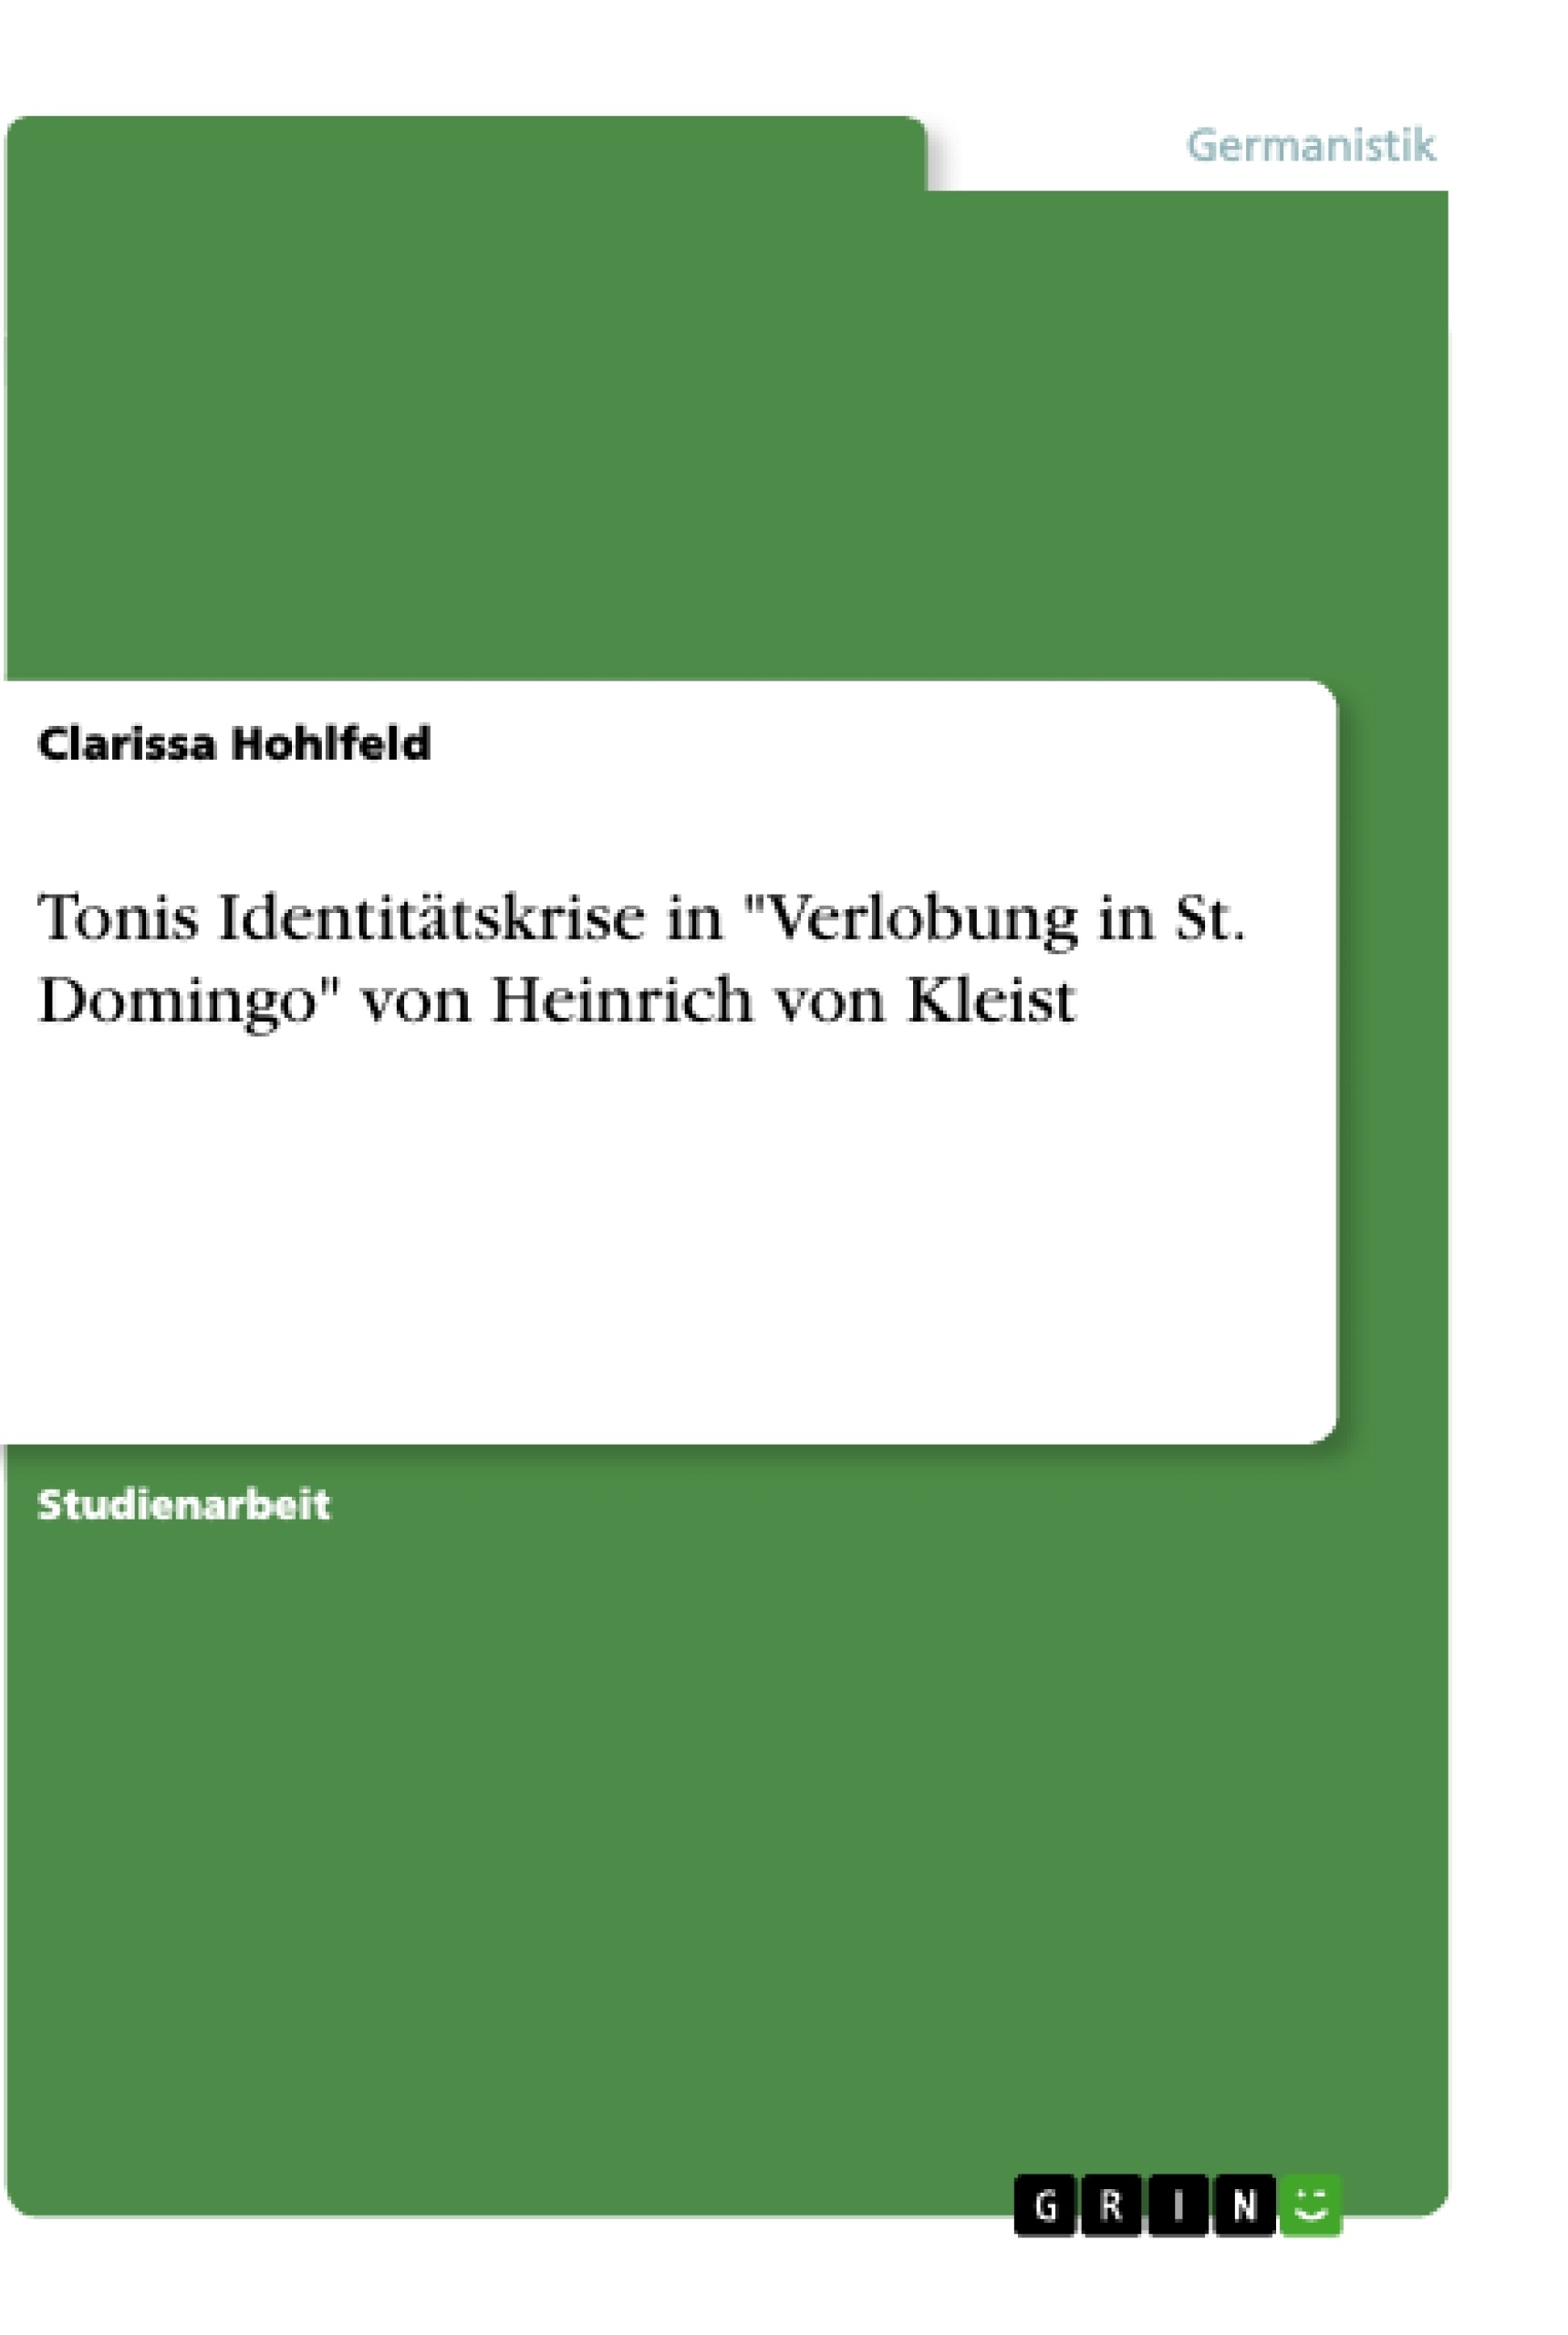 Título: Tonis Identitätskrise in "Verlobung in St. Domingo" von Heinrich von Kleist